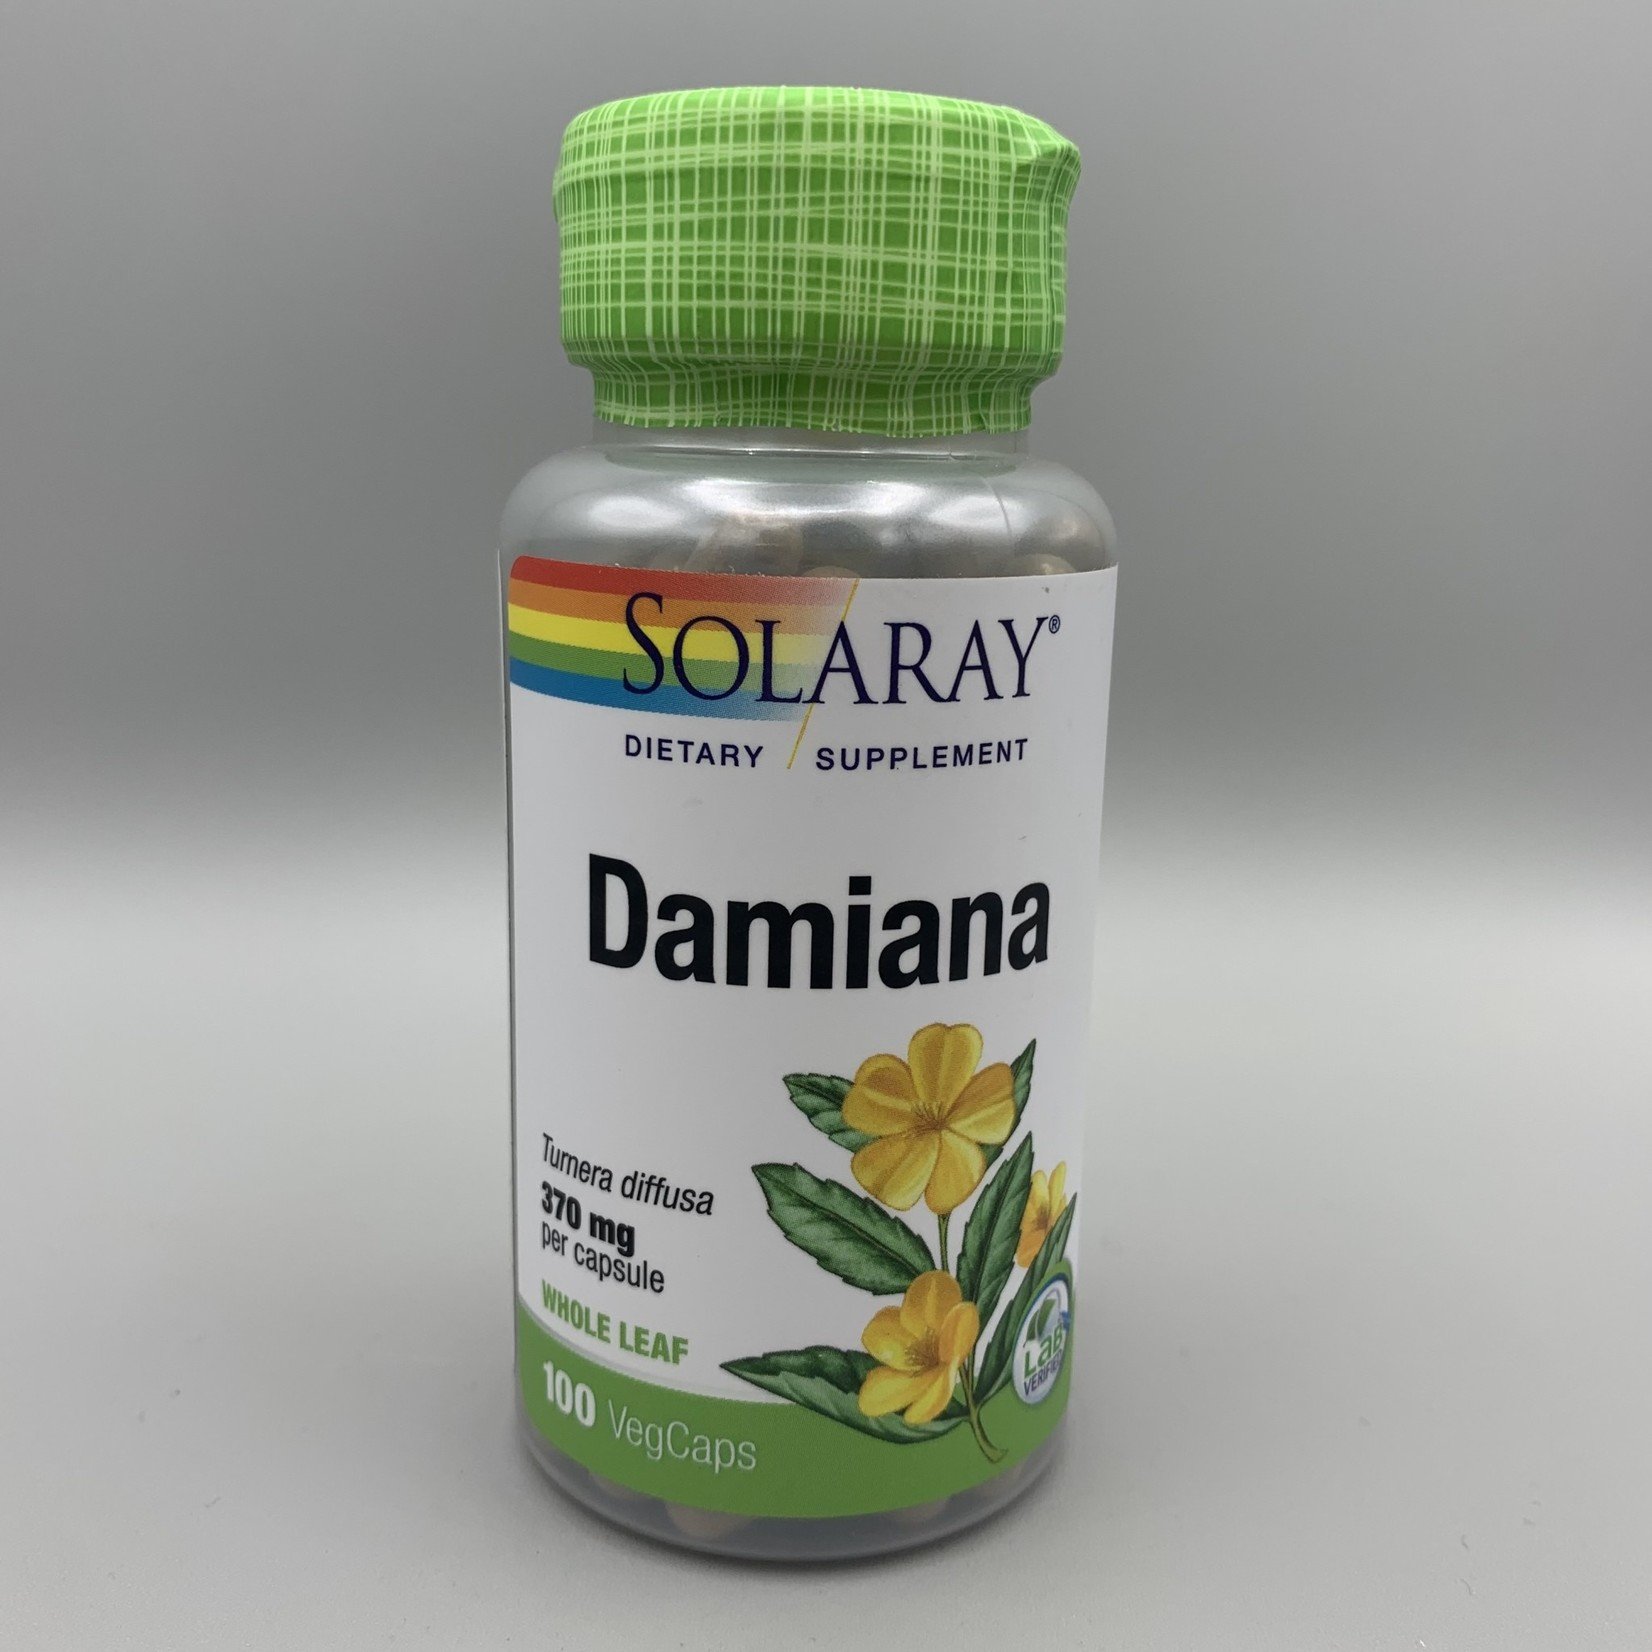 Solaray Solaray Damiana (Tumera diffusa, Whole Leaf) - 370 mg, 100 Veg. Capsules